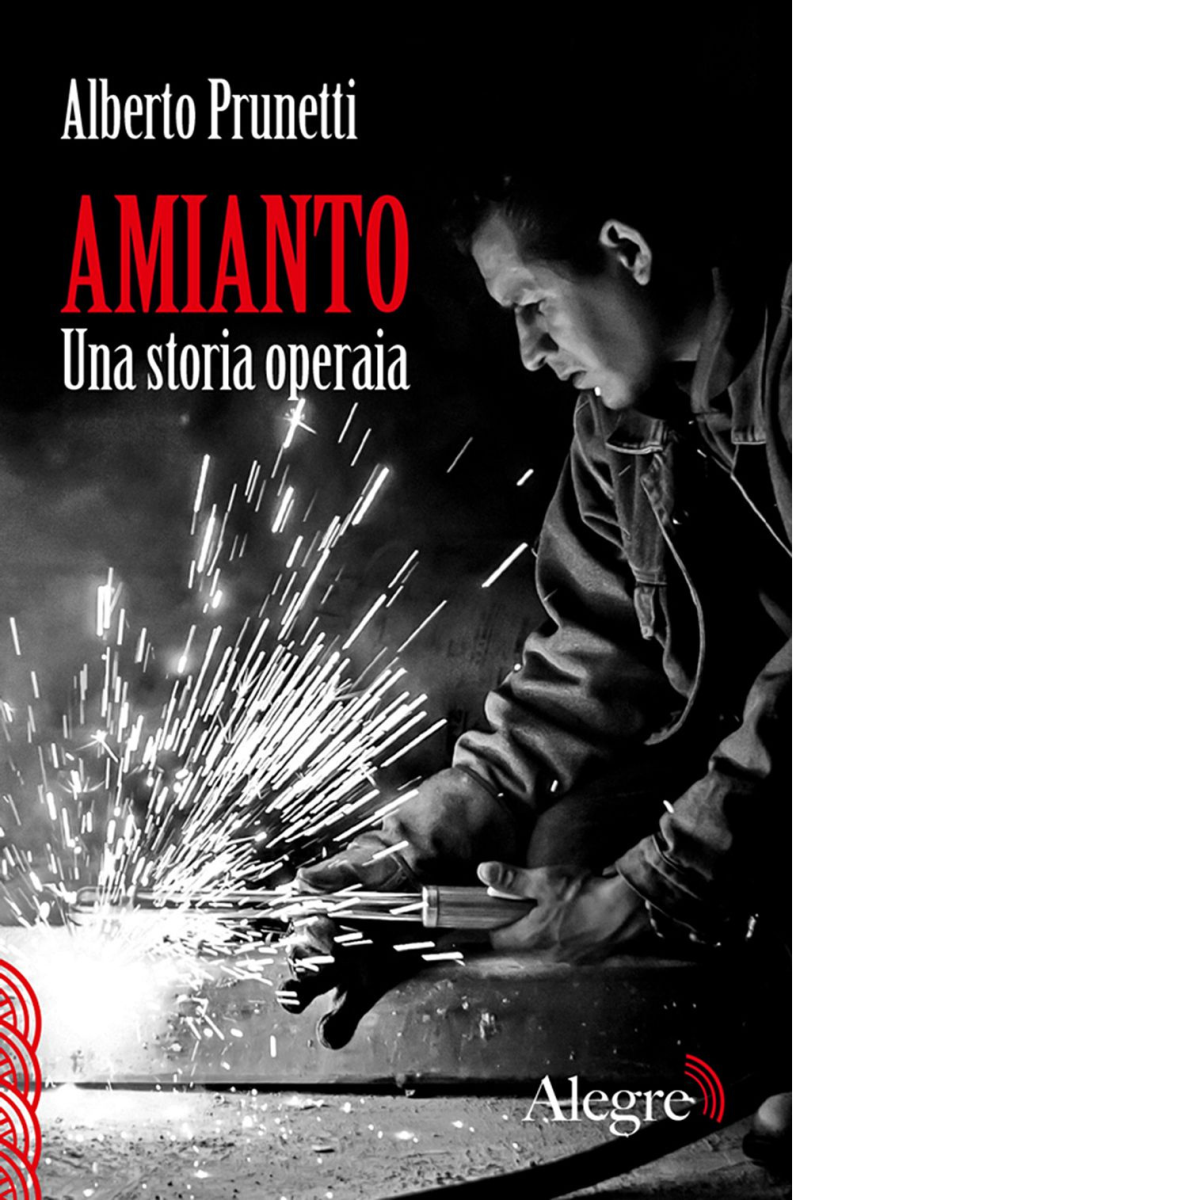  AMIANTO. UNA STORIA OPERAIA di ALBERTO PRUNETTI - edizioni alegre, 2014